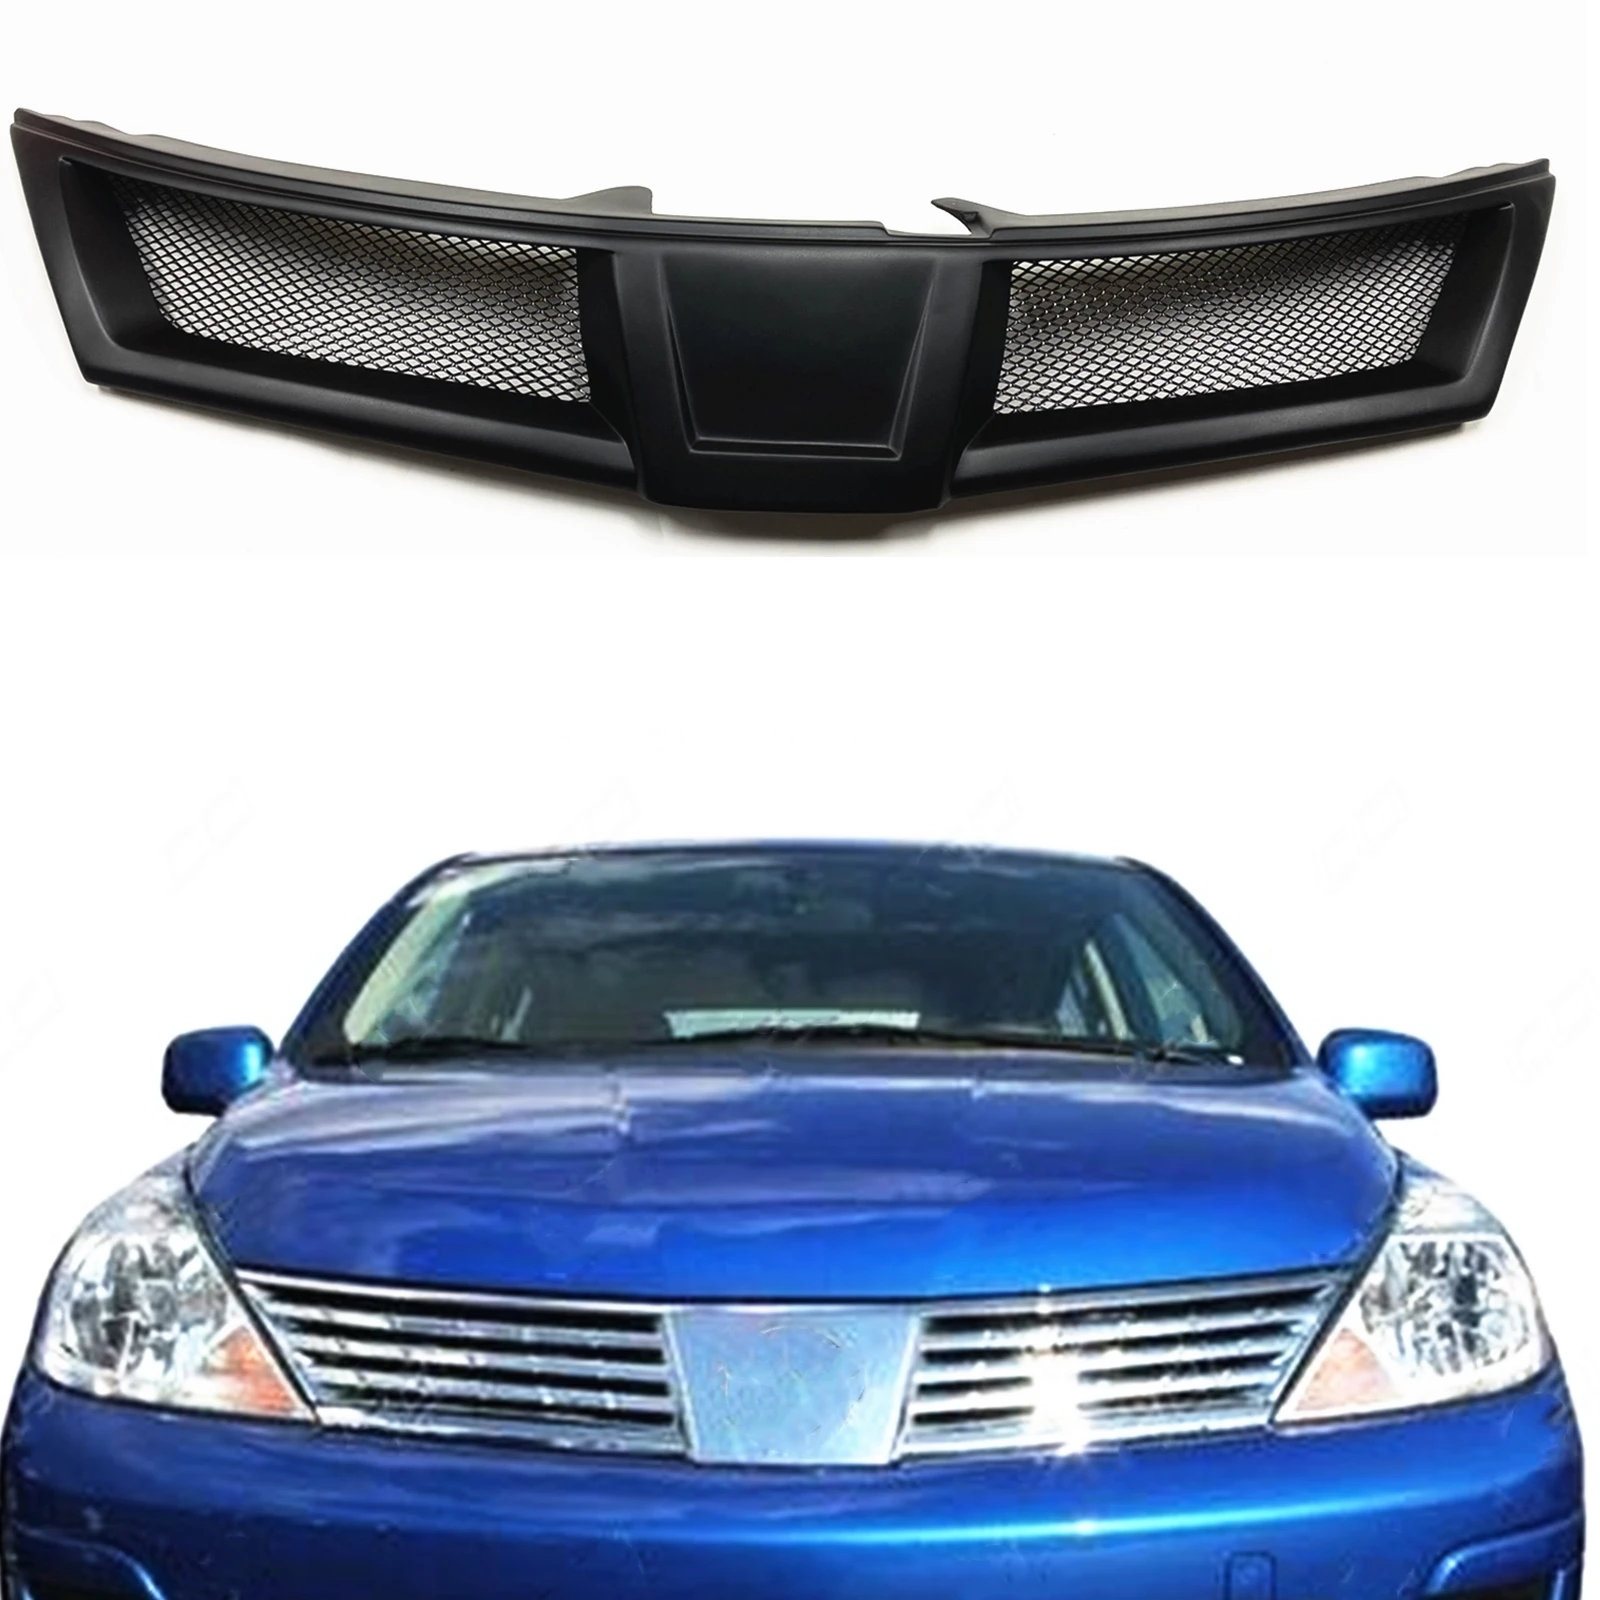 

Передняя решетка гриль для Nissan Versa 2007 2008 2009 2010 2011 2012 сот стиль стекловолокно/углеродное волокно верхний бампер